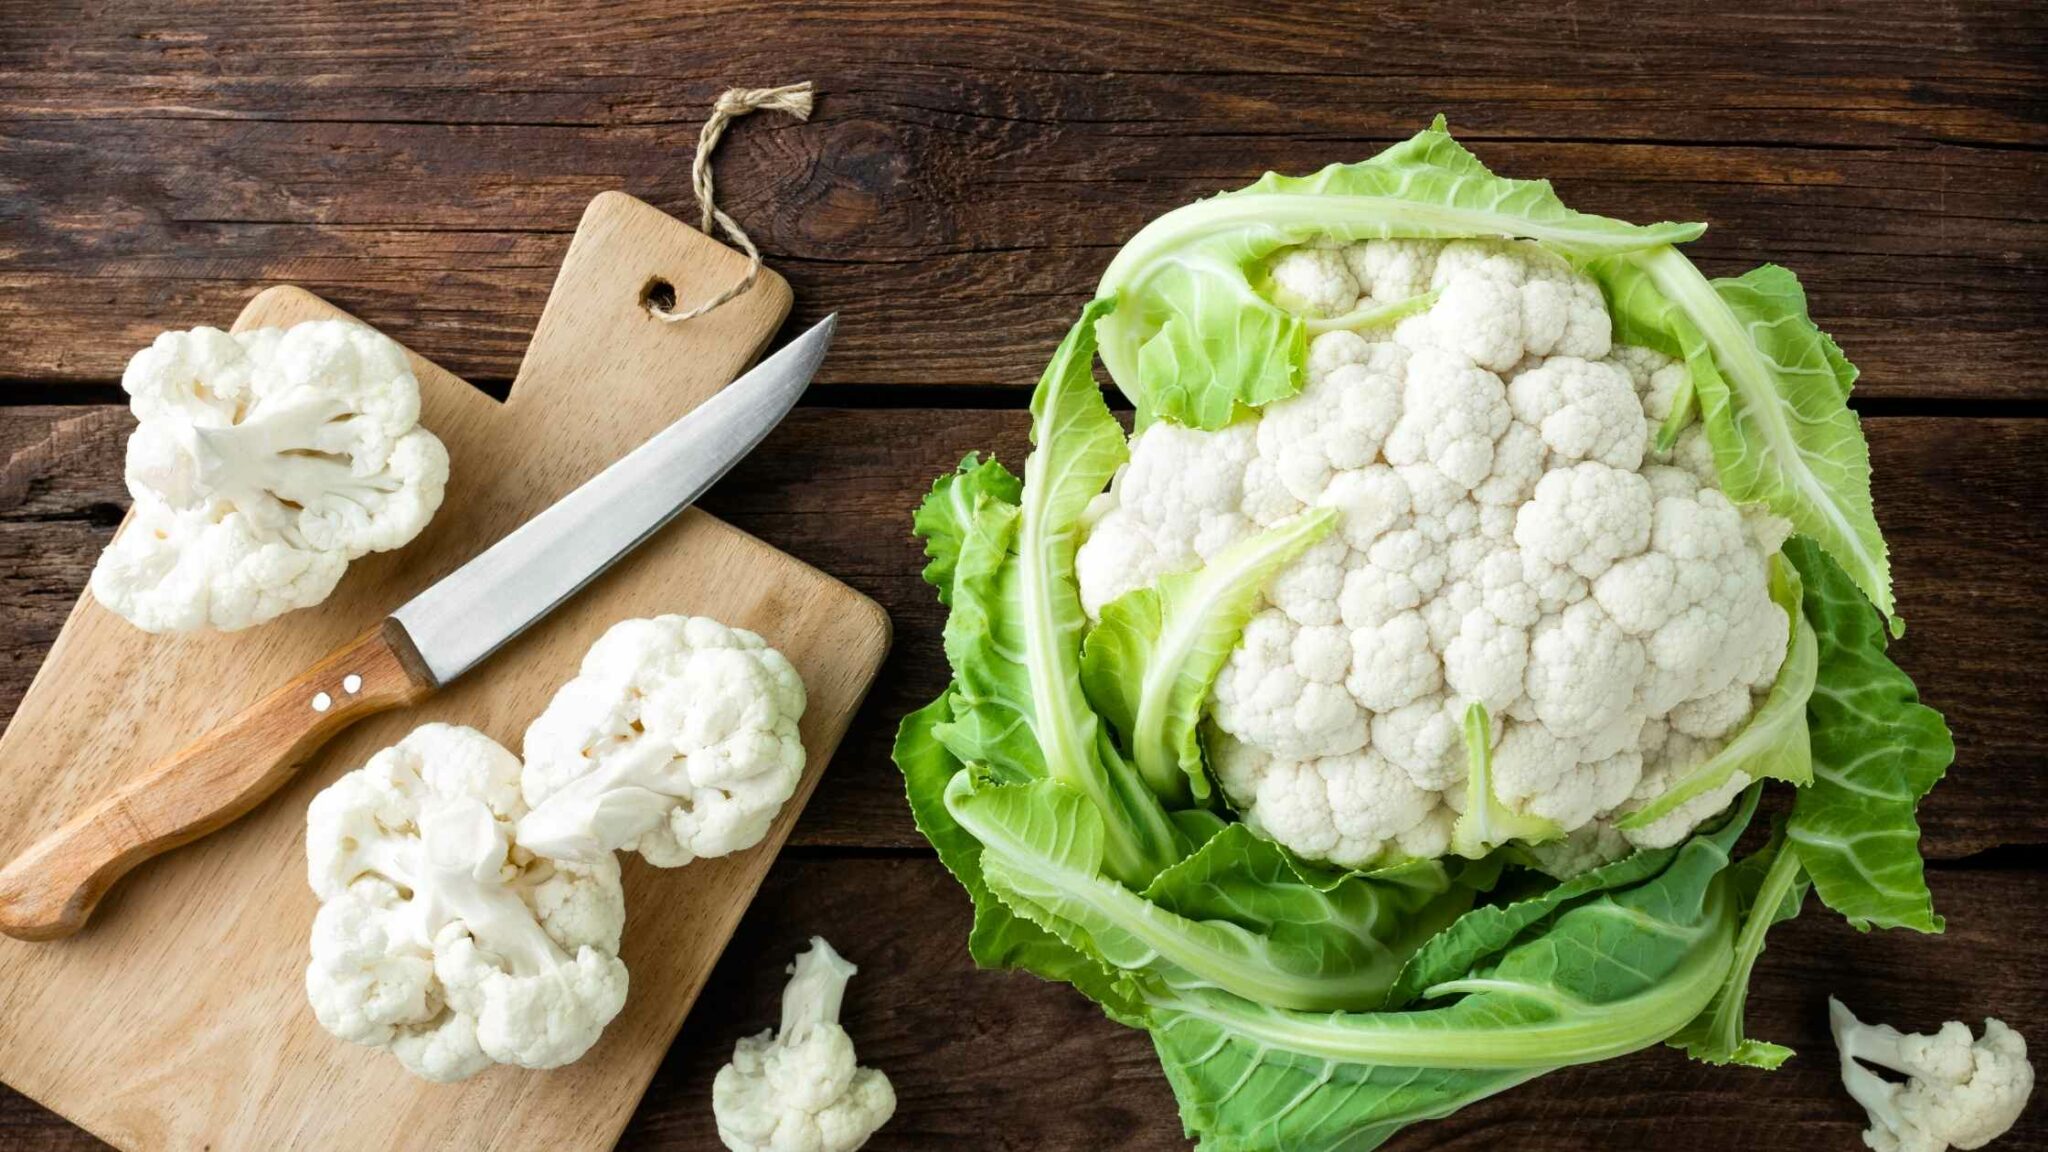 Healthy Cauliflower Benefits